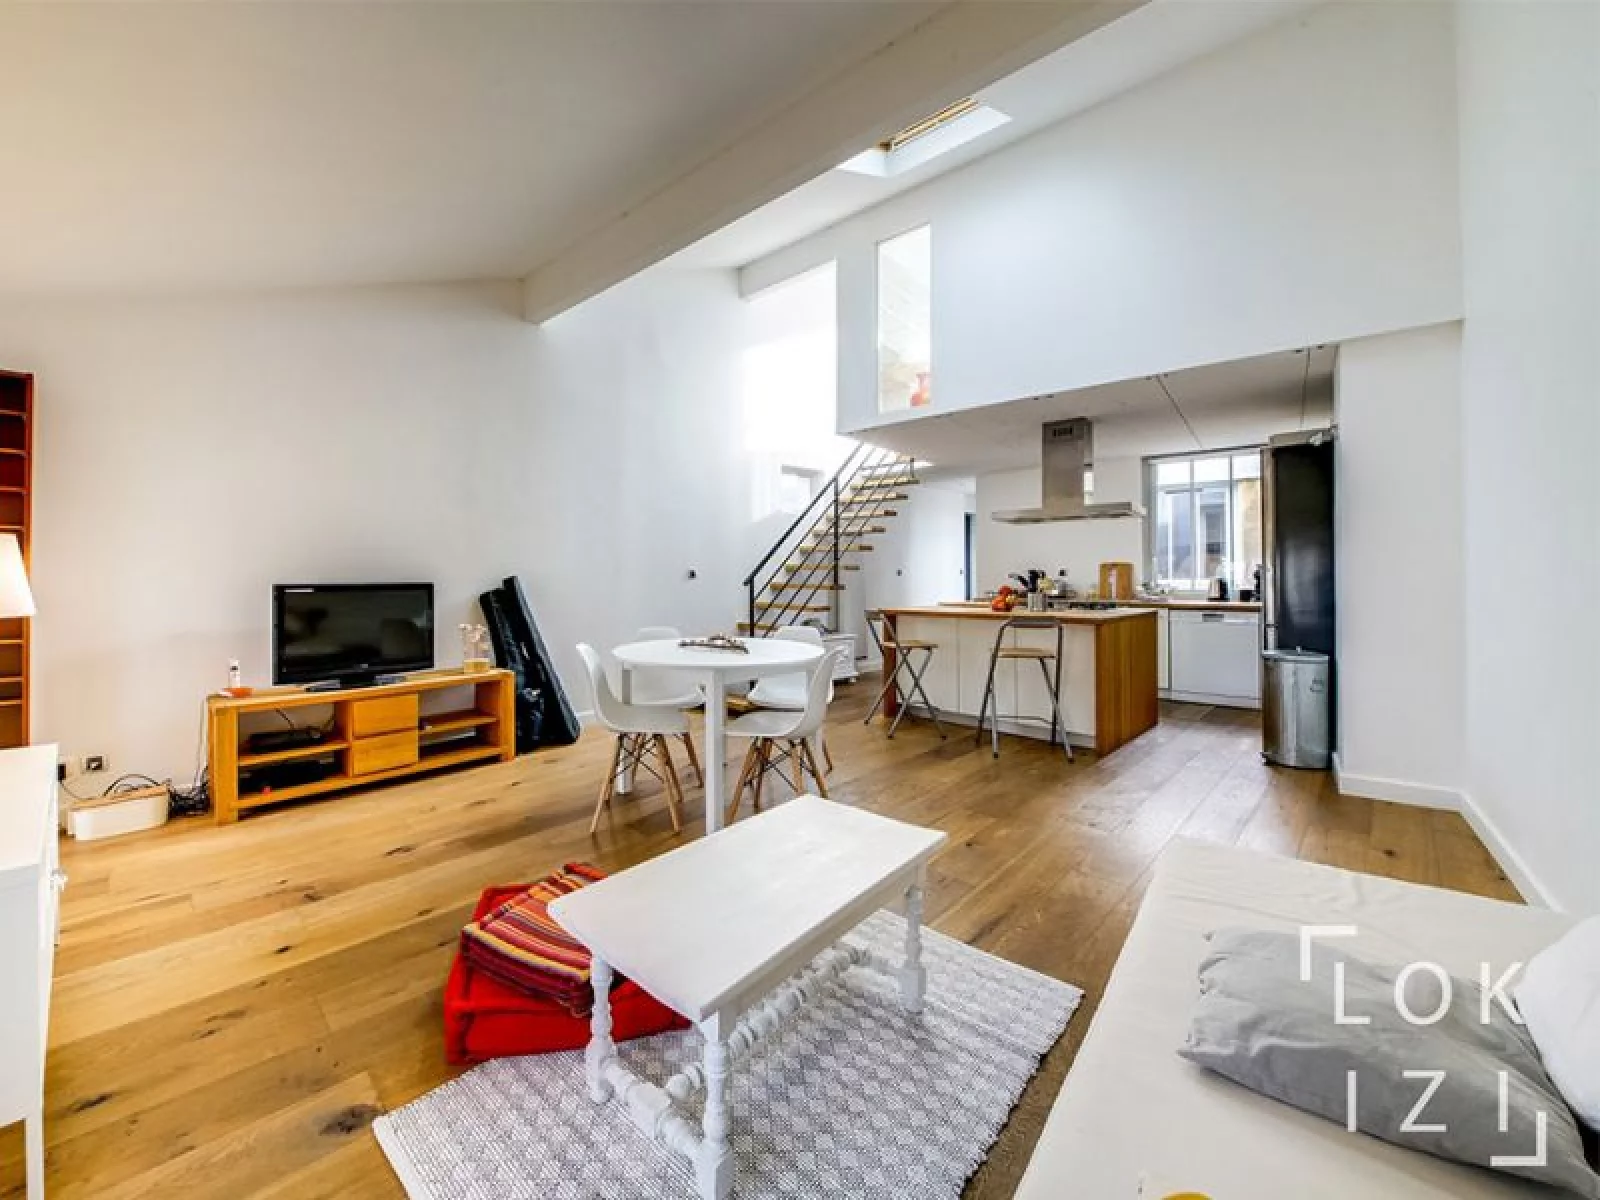 Location appartement duplex meublé 4 pièces 84m² (Bordeaux)